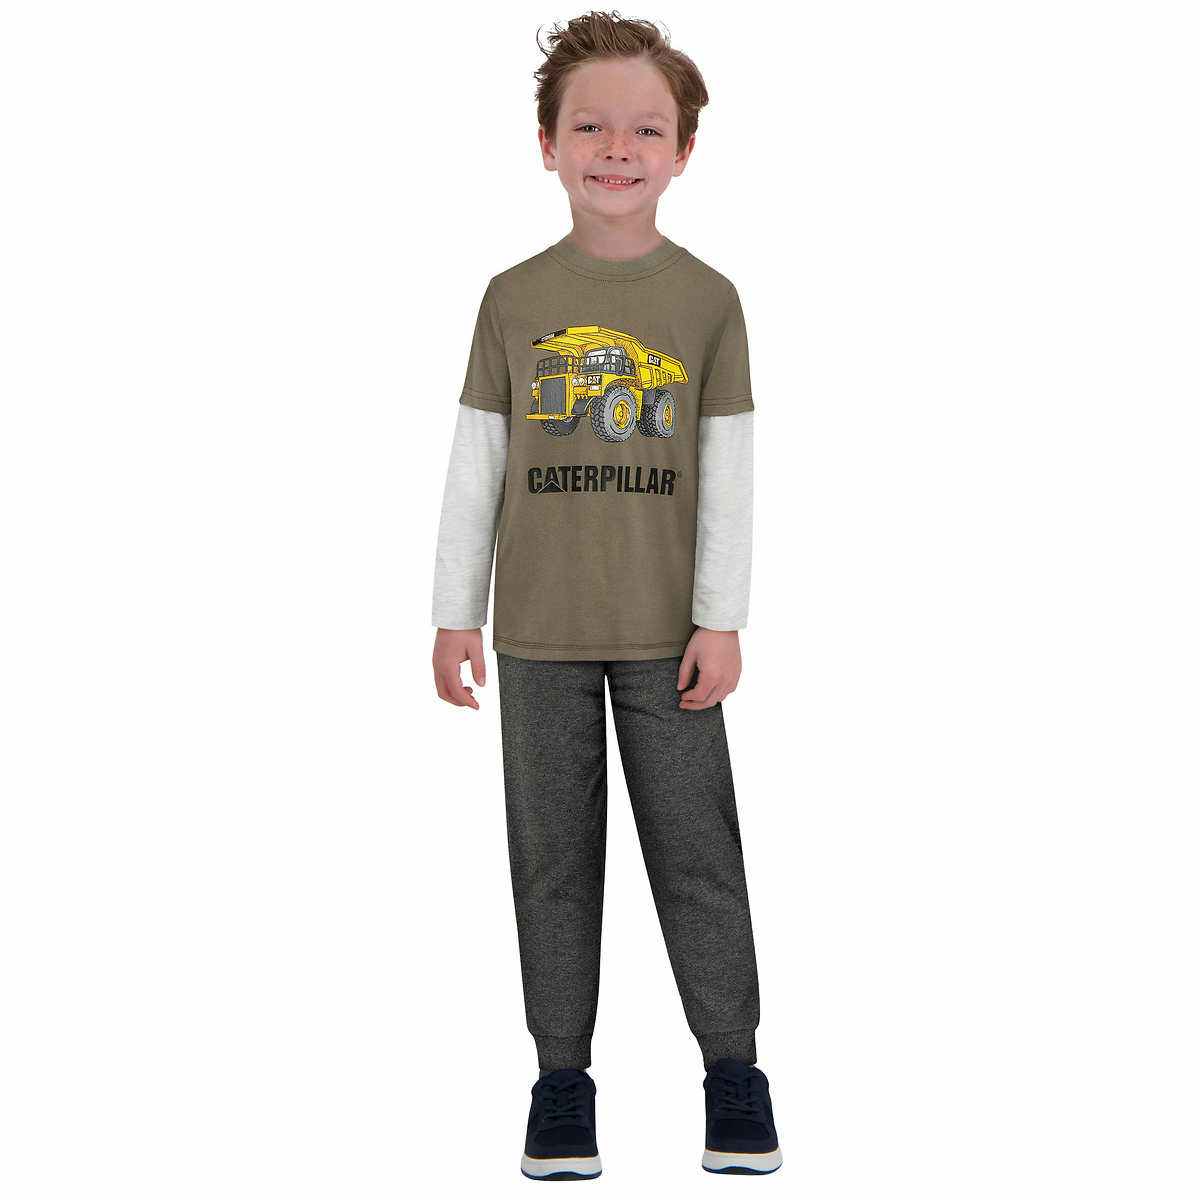 a boy wearing a caterpillar clothing set